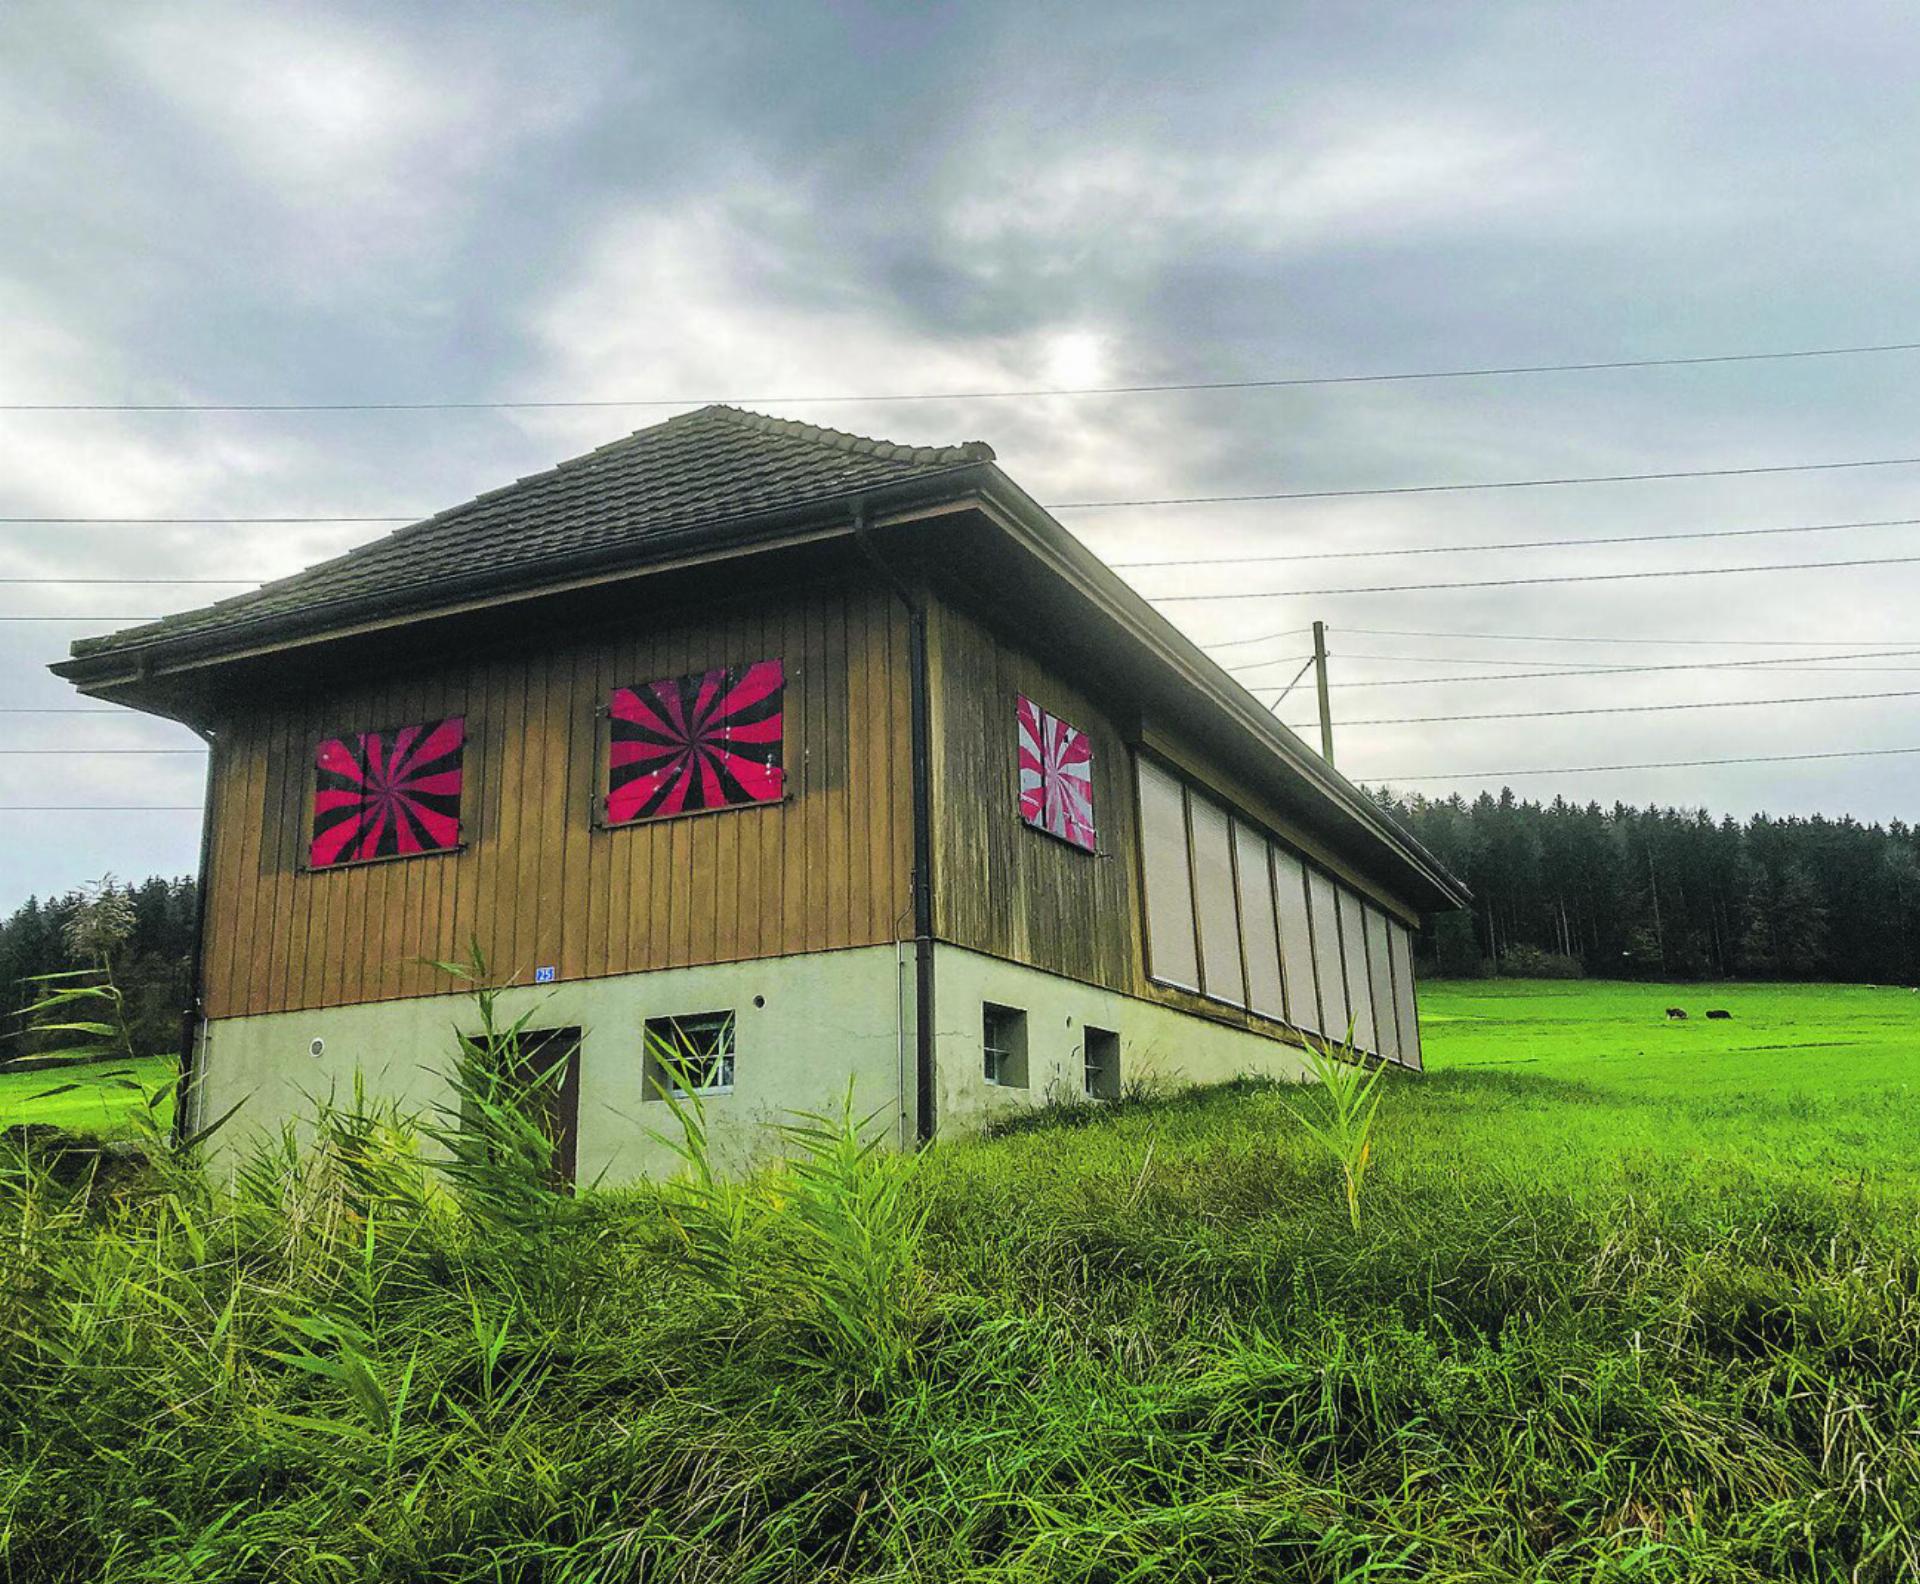 Das Schützenhaus befindet sich in der Landwirtschaftszone, weshalb sich das Baugesuch aktuell beim kantonalen Amt für Raumentwicklung befindet. Bild: zvg